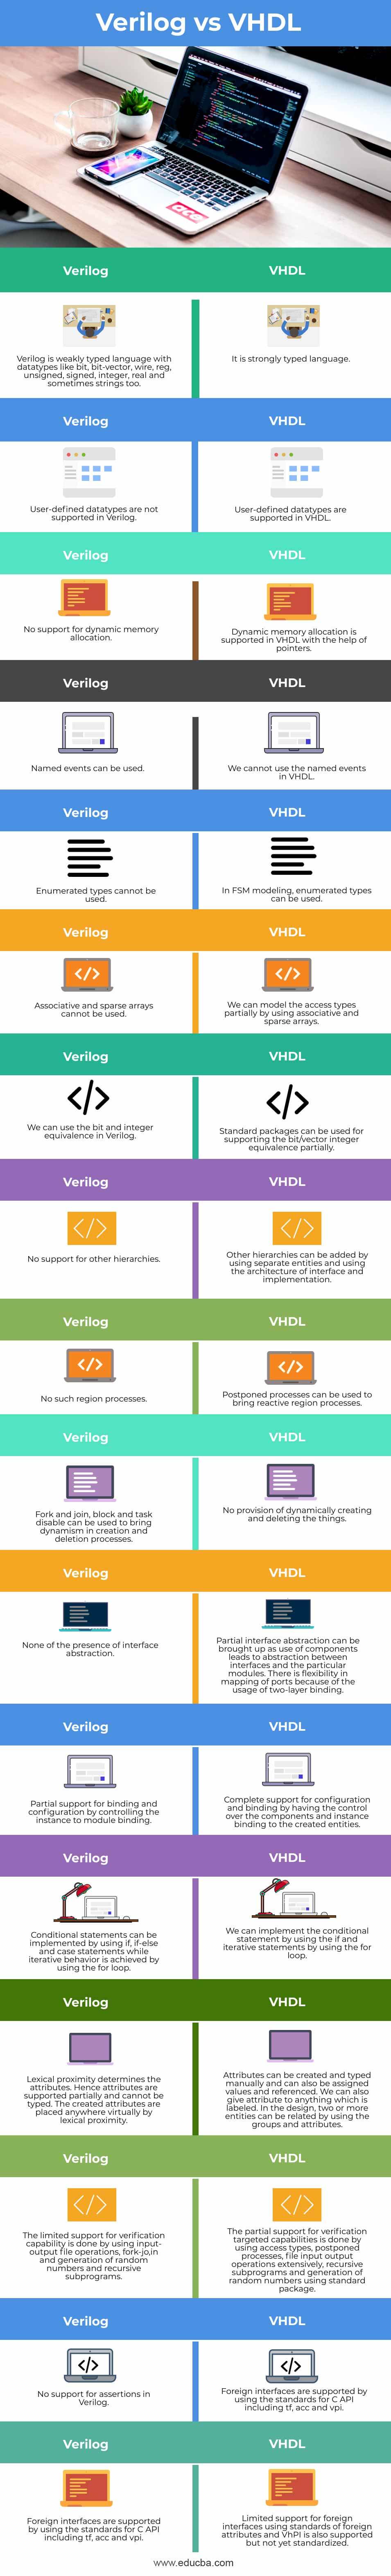 Verilog-vs-VHDL-info